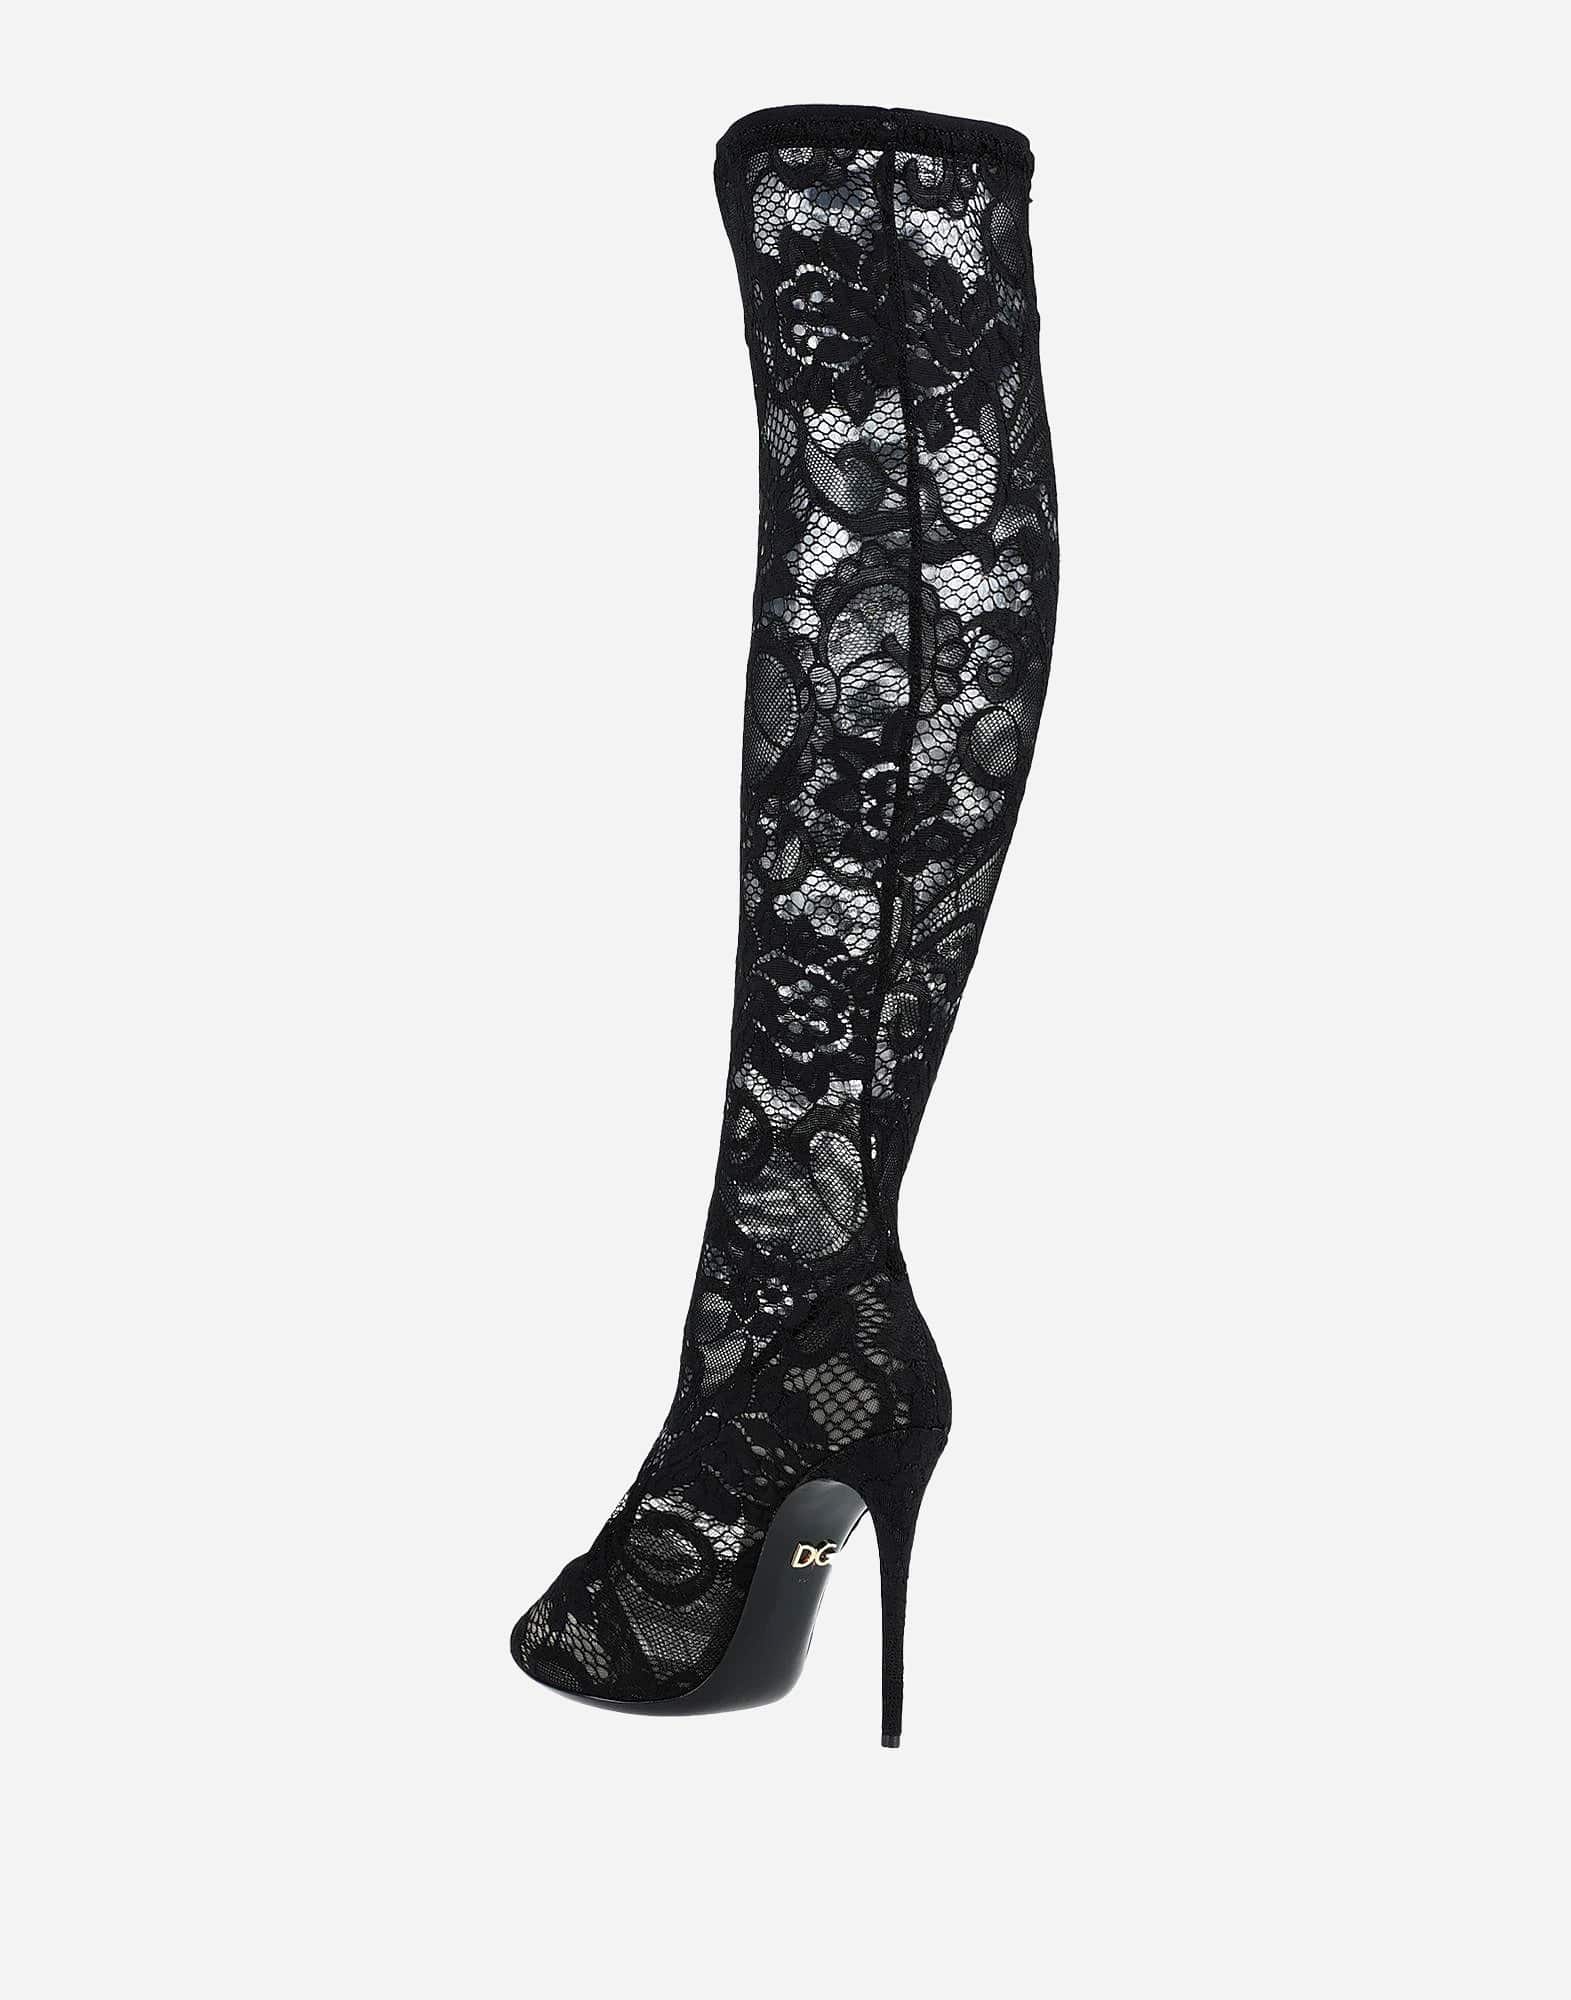 Dolce & Gabbana Taormina Lace Boots